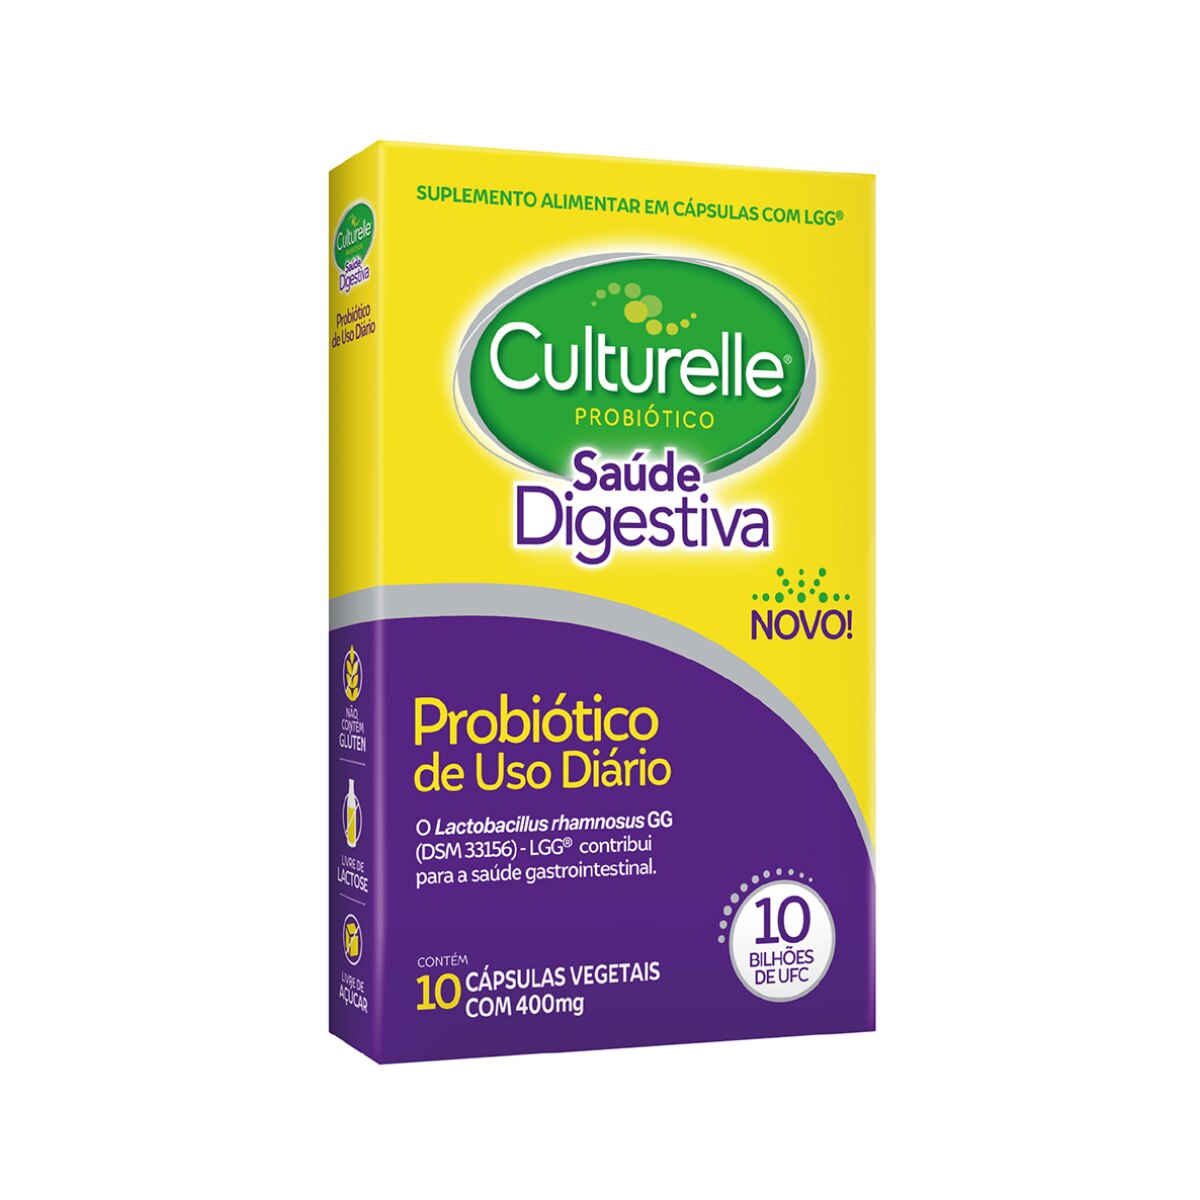 Culturelle Probiotico Saude Digestiva 10 Capsulas Vegetais